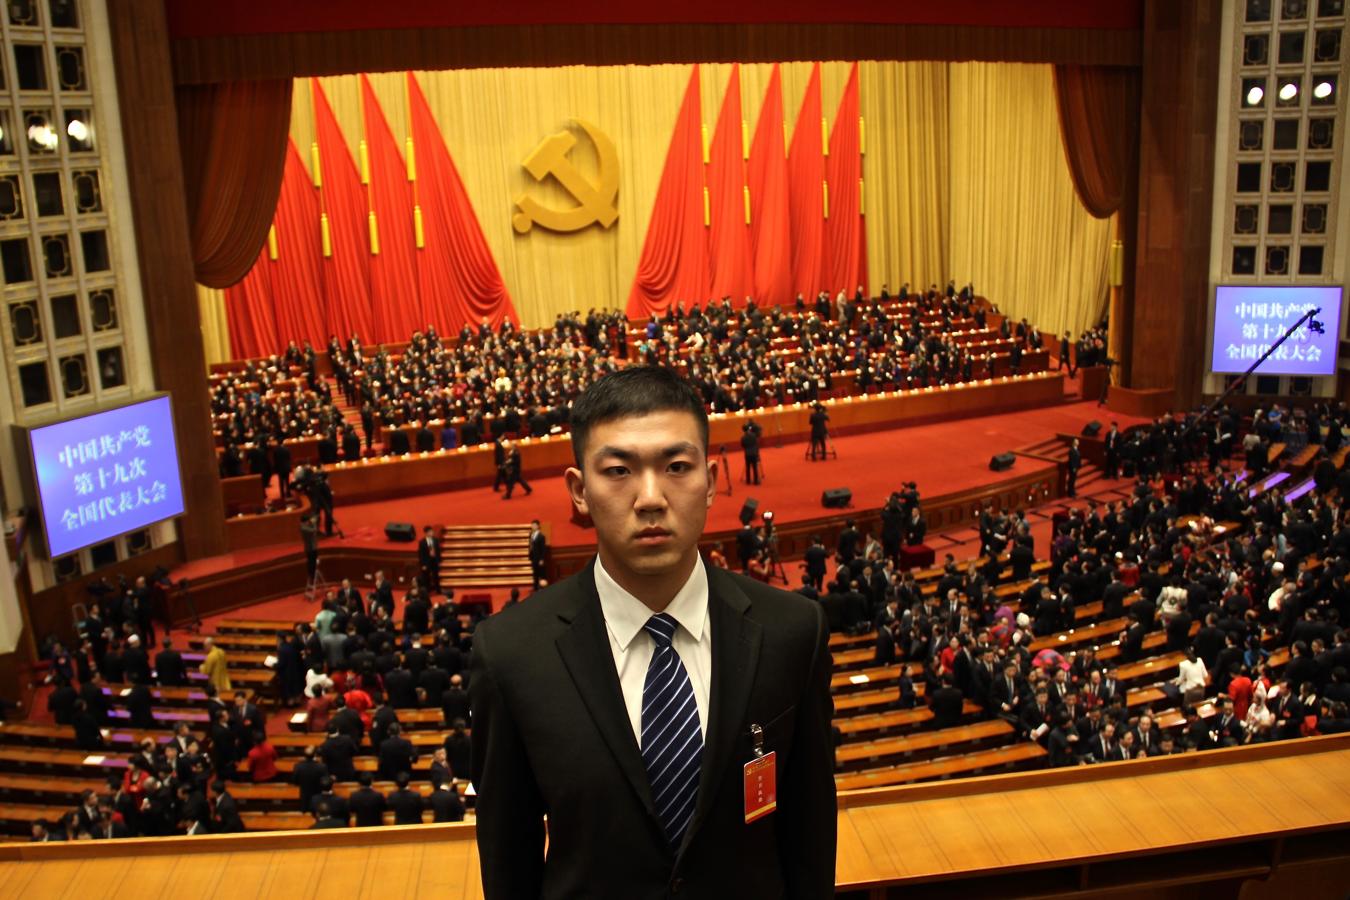 EEUU impone más restricciones de entrada a comunistas chinos